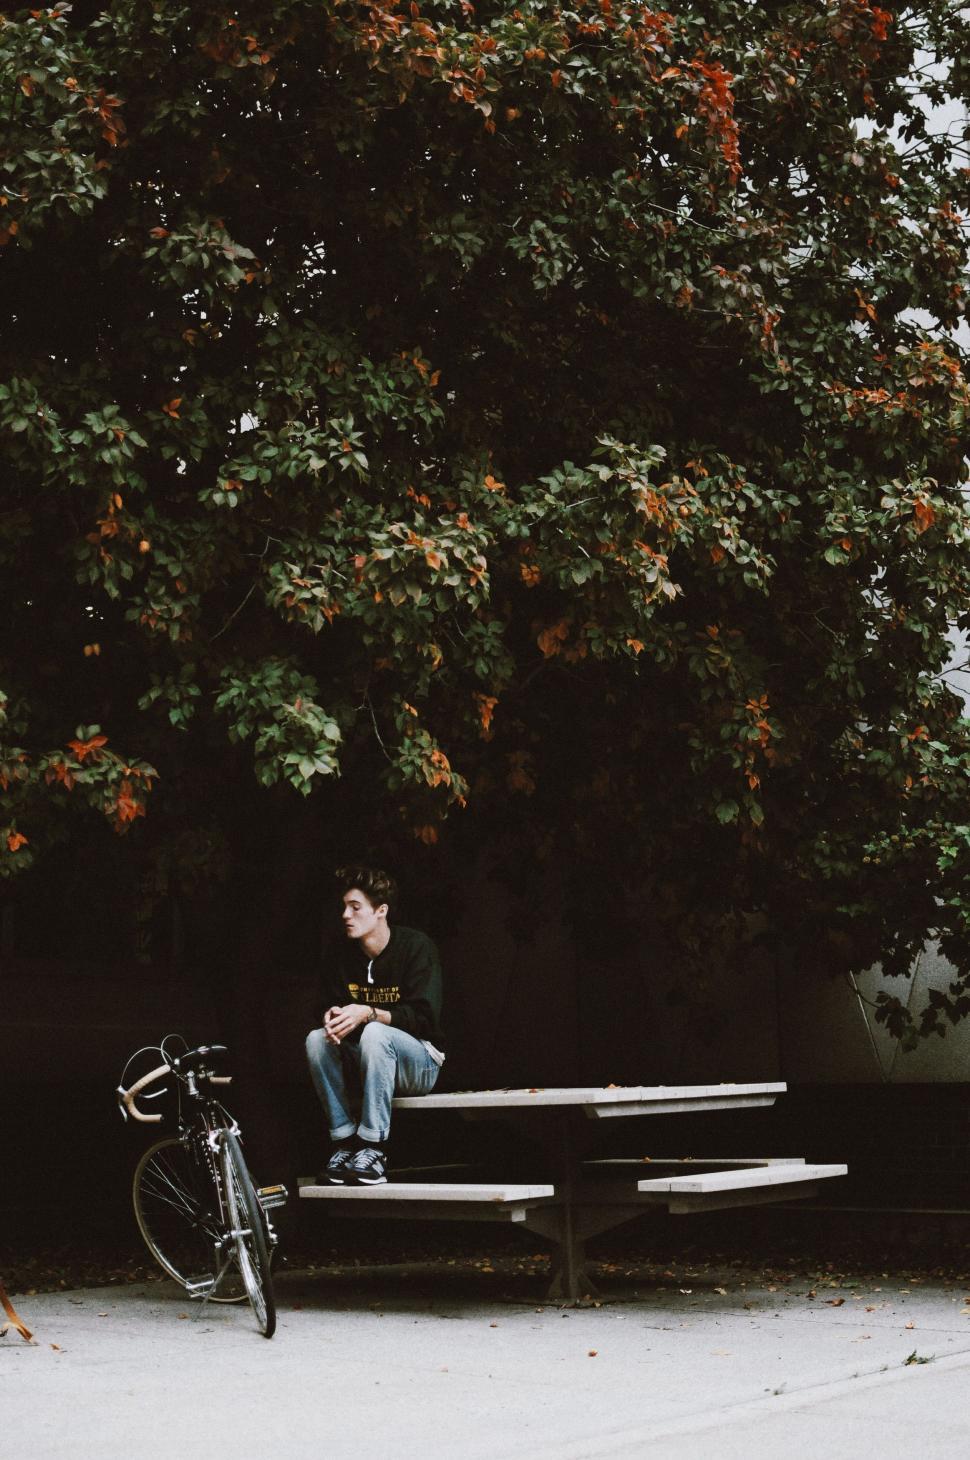 Free Image of Man Sitting on Bench Next to Bike 